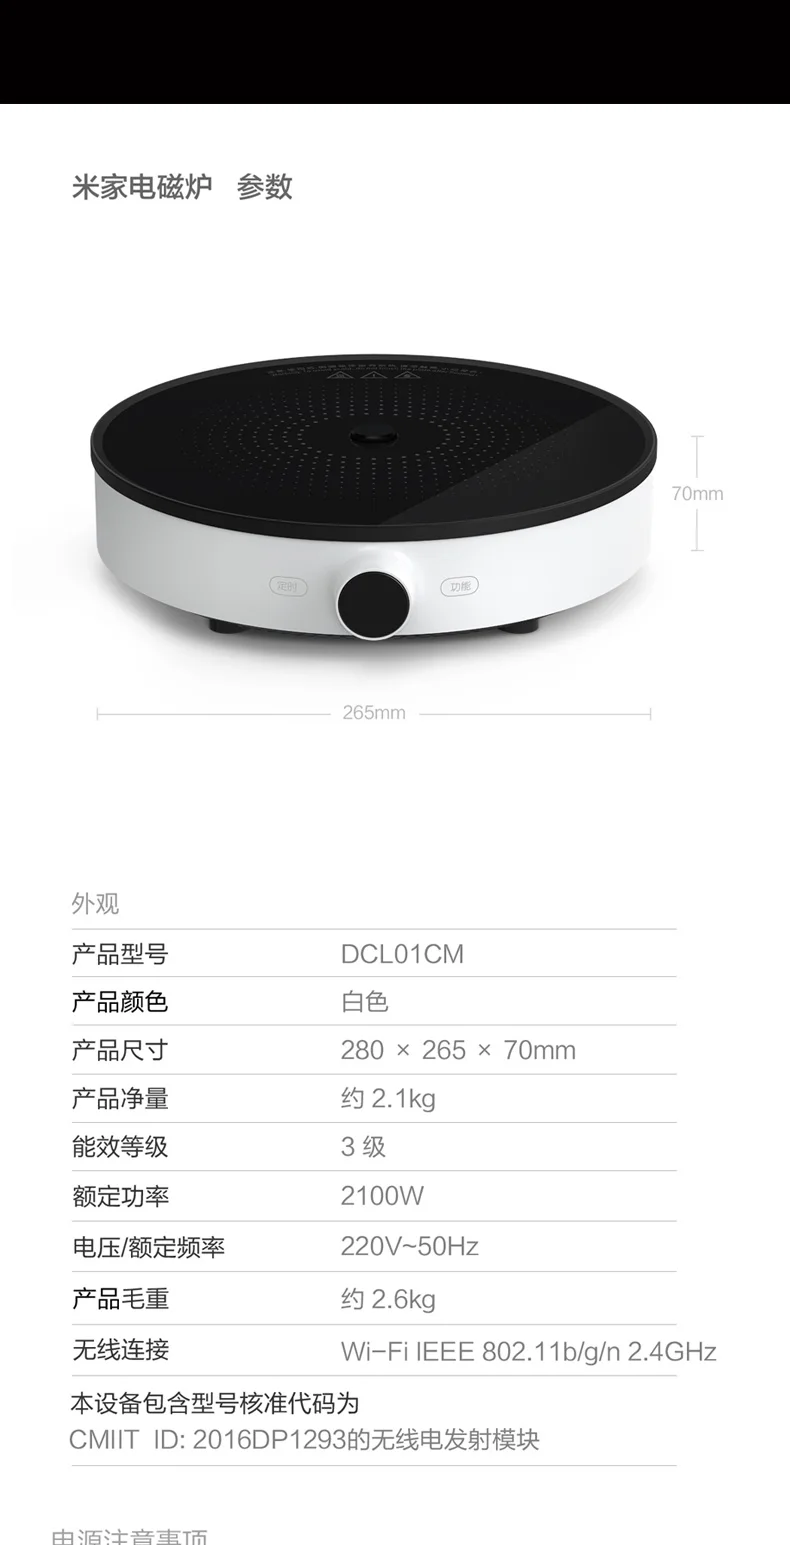 Оригинальная индукционная плита xiaomi mi jia для mi home app пульт дистанционного управления для xiaomi smart home kit как можно скорее с костюмом xiaomi mi jia pot